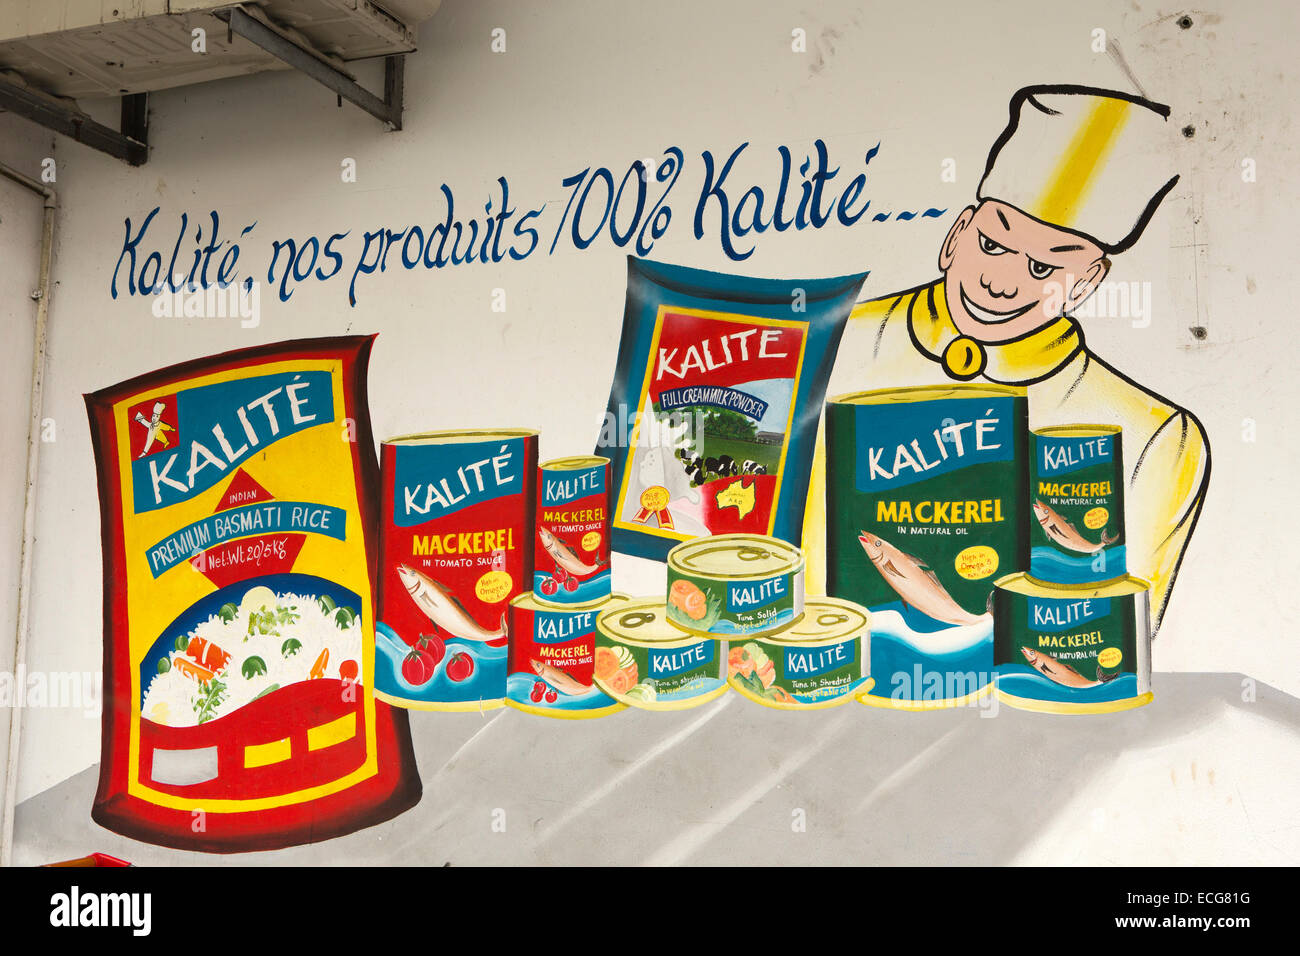 Mauricio, Mahebourg, del centro de la ciudad, pintados a mano de publicidad para productos alimenticios Kalite Foto de stock